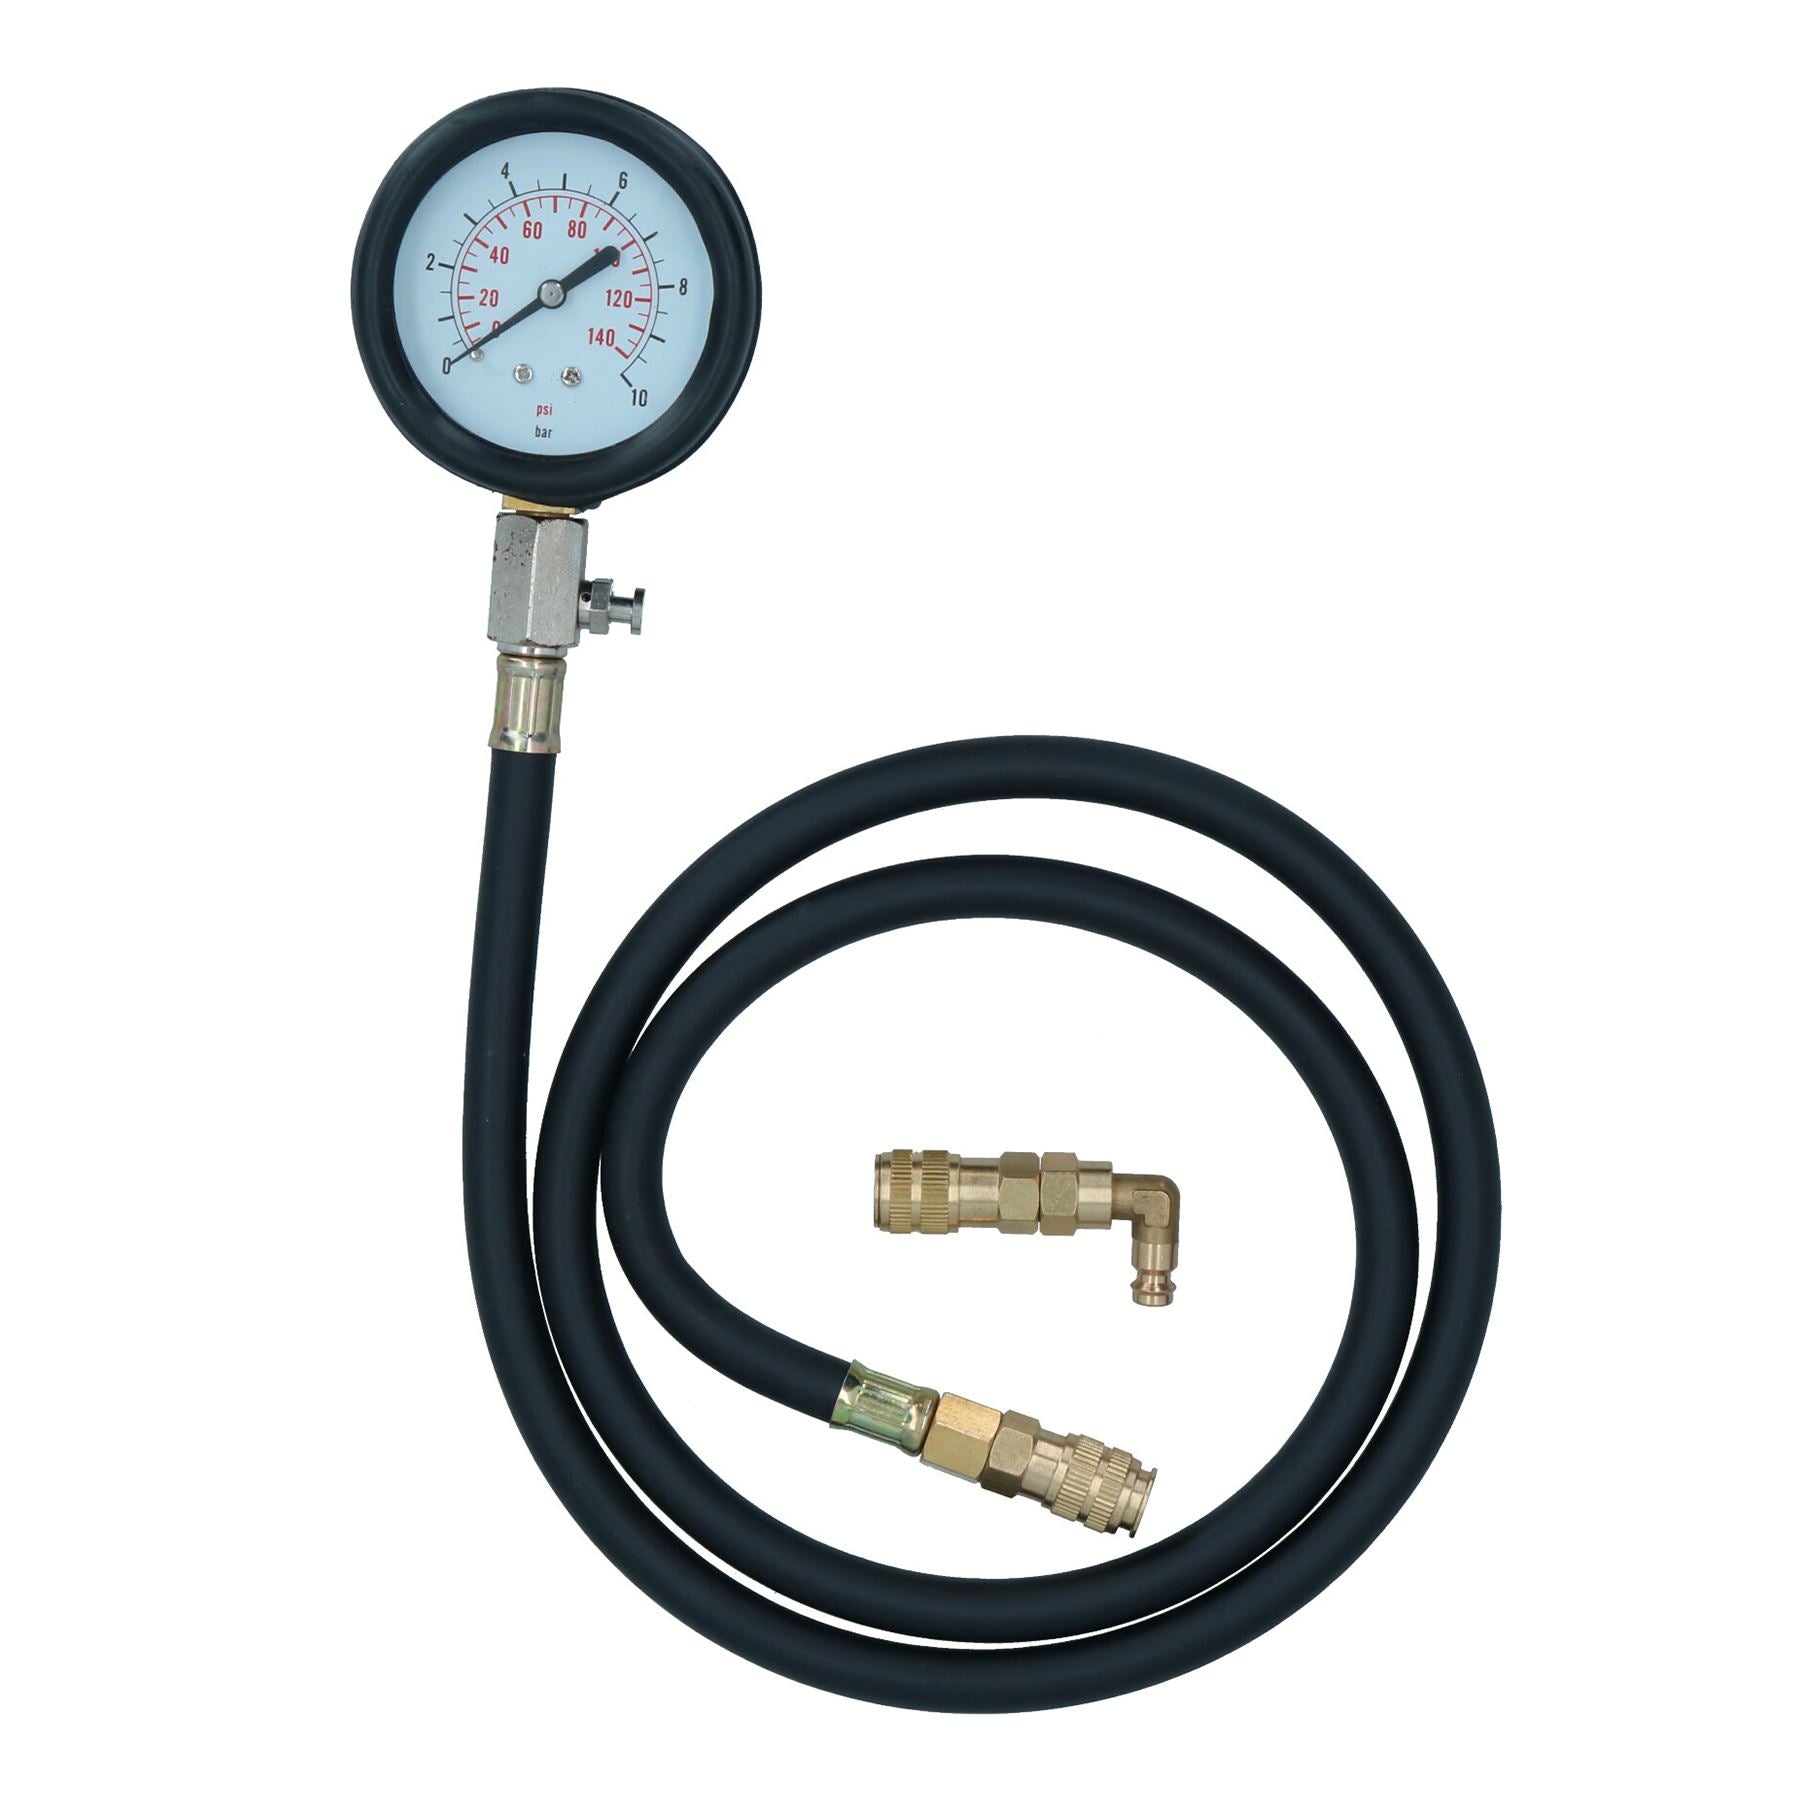 Engine Oil Pressure Tester Kit Diagnostic Warning Device For cars Vans 12pc Set